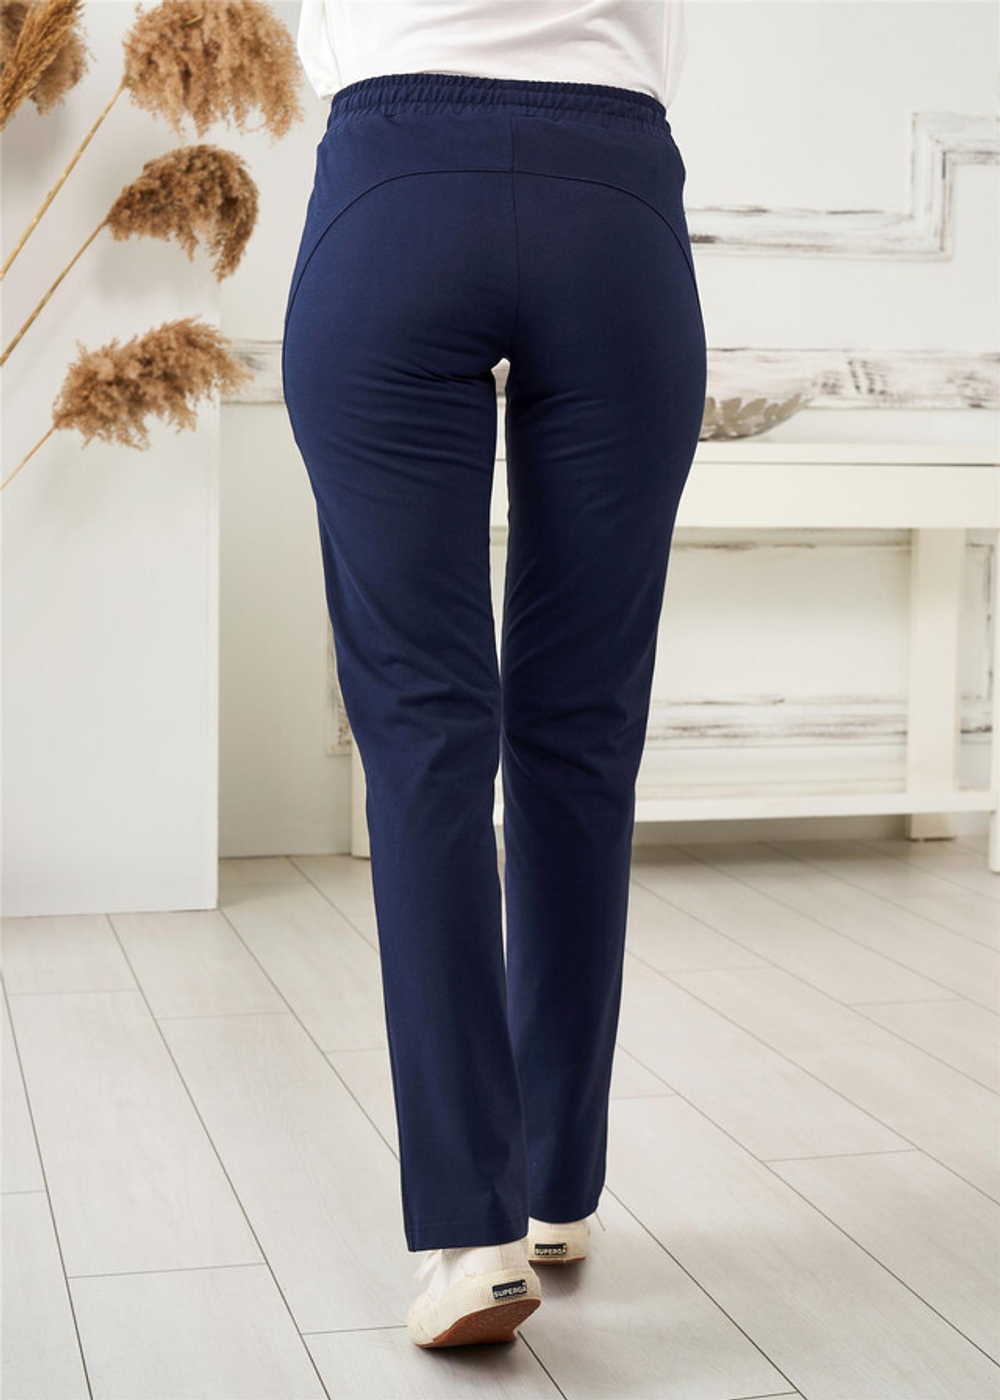 RELAX MODE / Спортивные штаны женские трикотажные штаны женские базовые - 40086